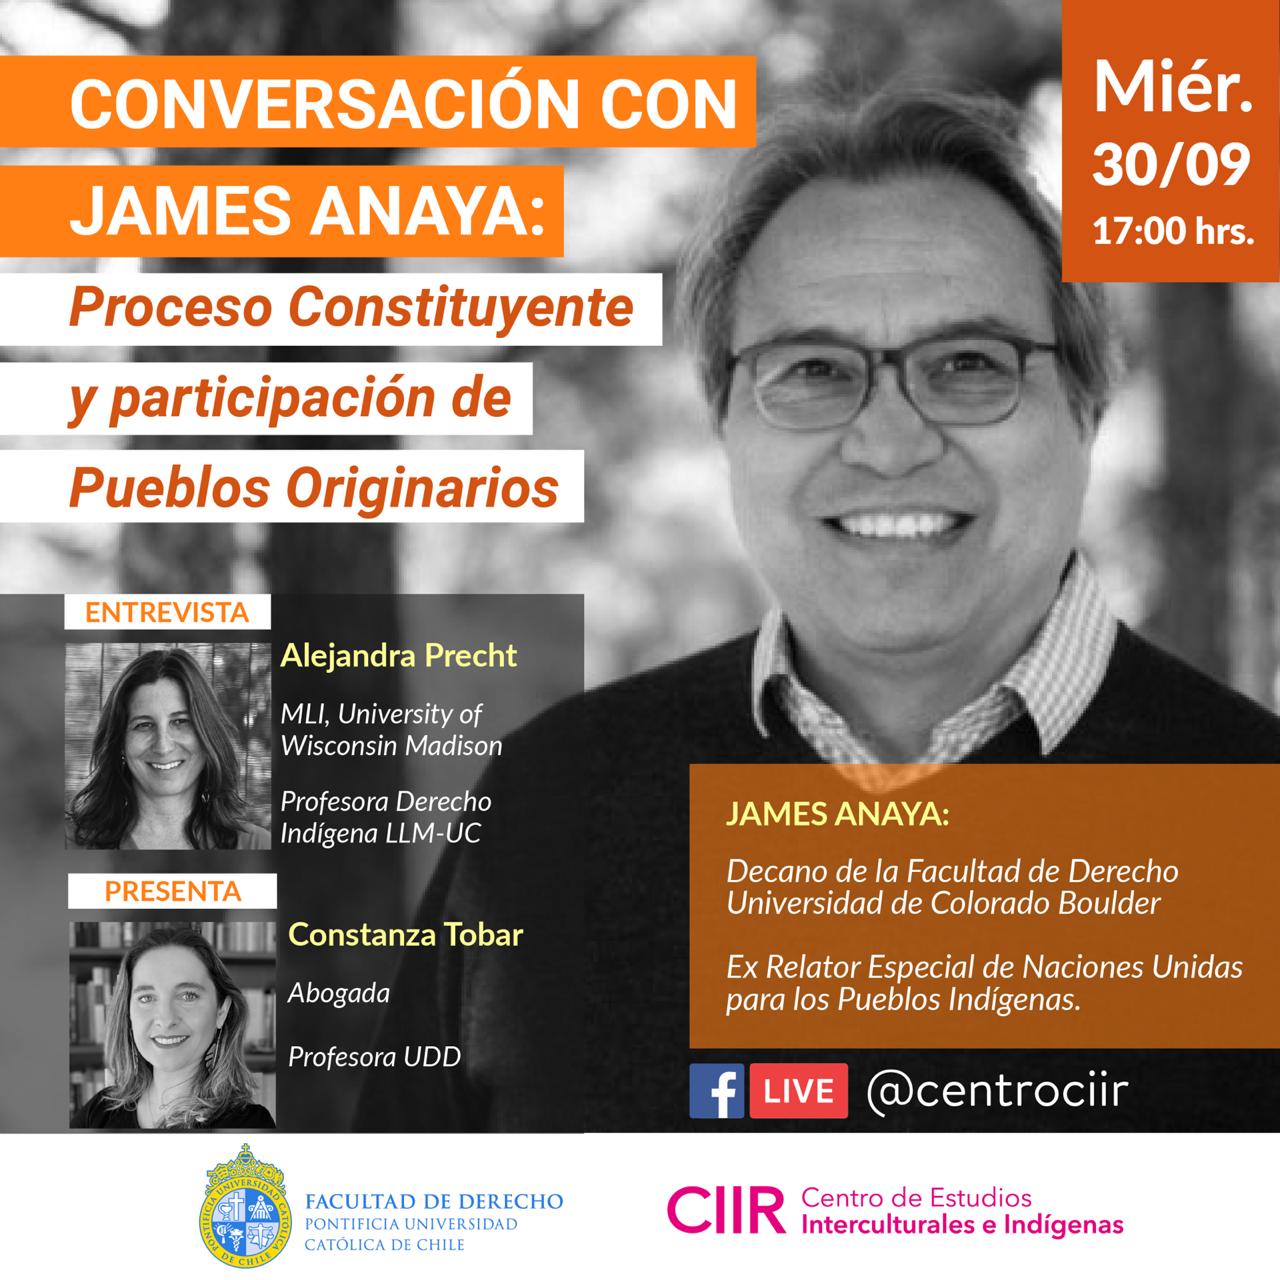 Conversación con James Anaya: Proceso Constituyente y participación de Pueblos Originarios